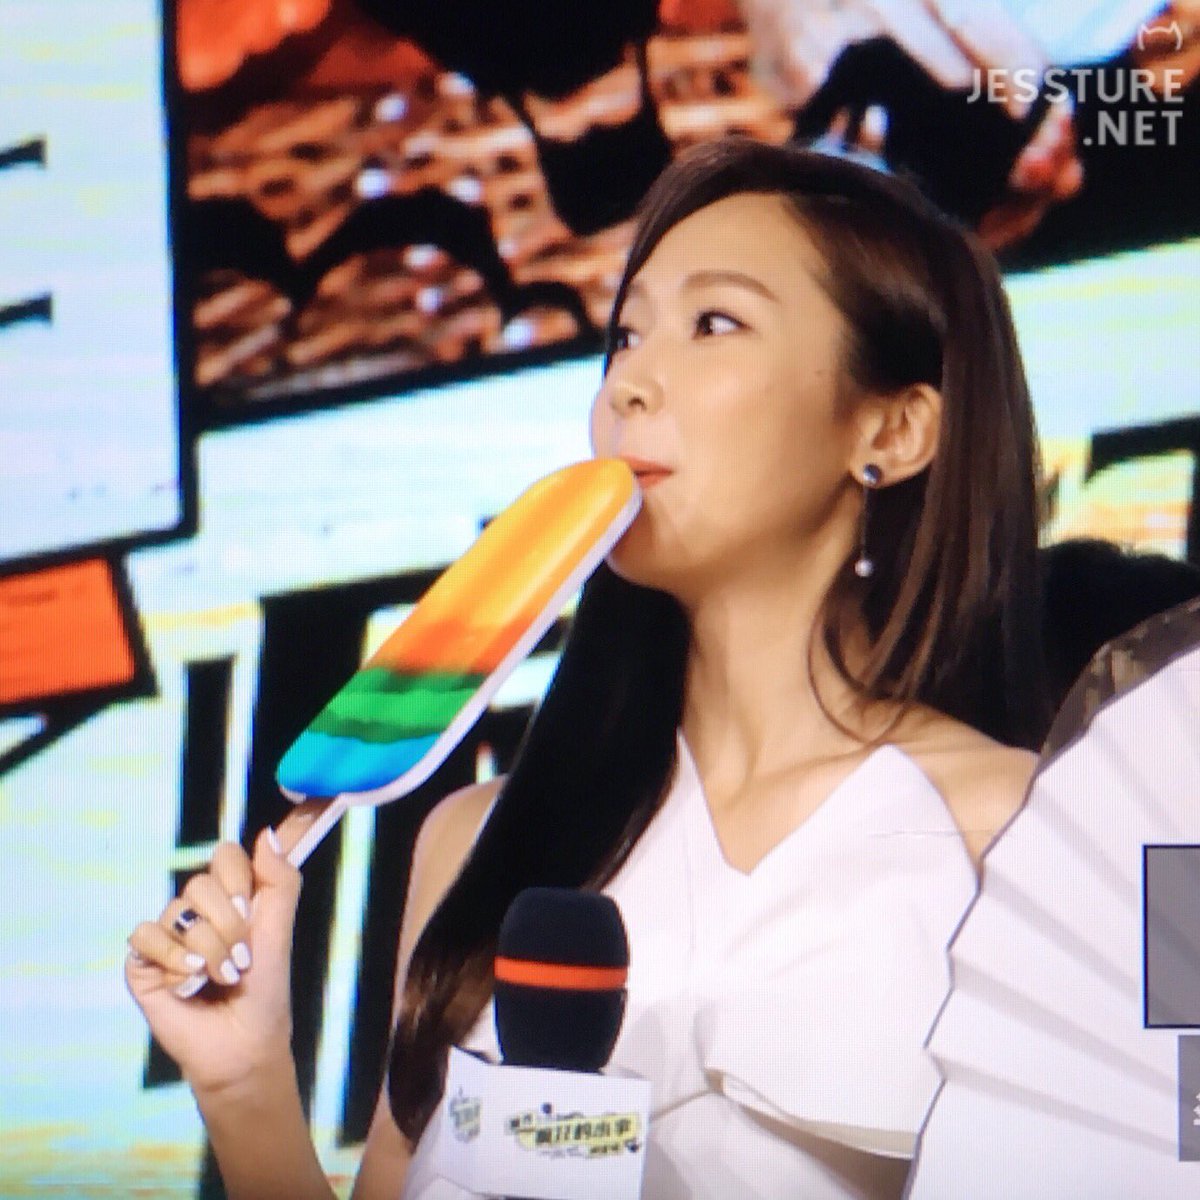 [PIC][08-08-2016]Jessica khởi hành đi Bắc Kinh – Trung Quốc để tham dự chuỗi hoạt động quảng bá cho Movie "I Love That Crazy Little Thing" vào chiều nay CpZqFVgVMAAh6eu